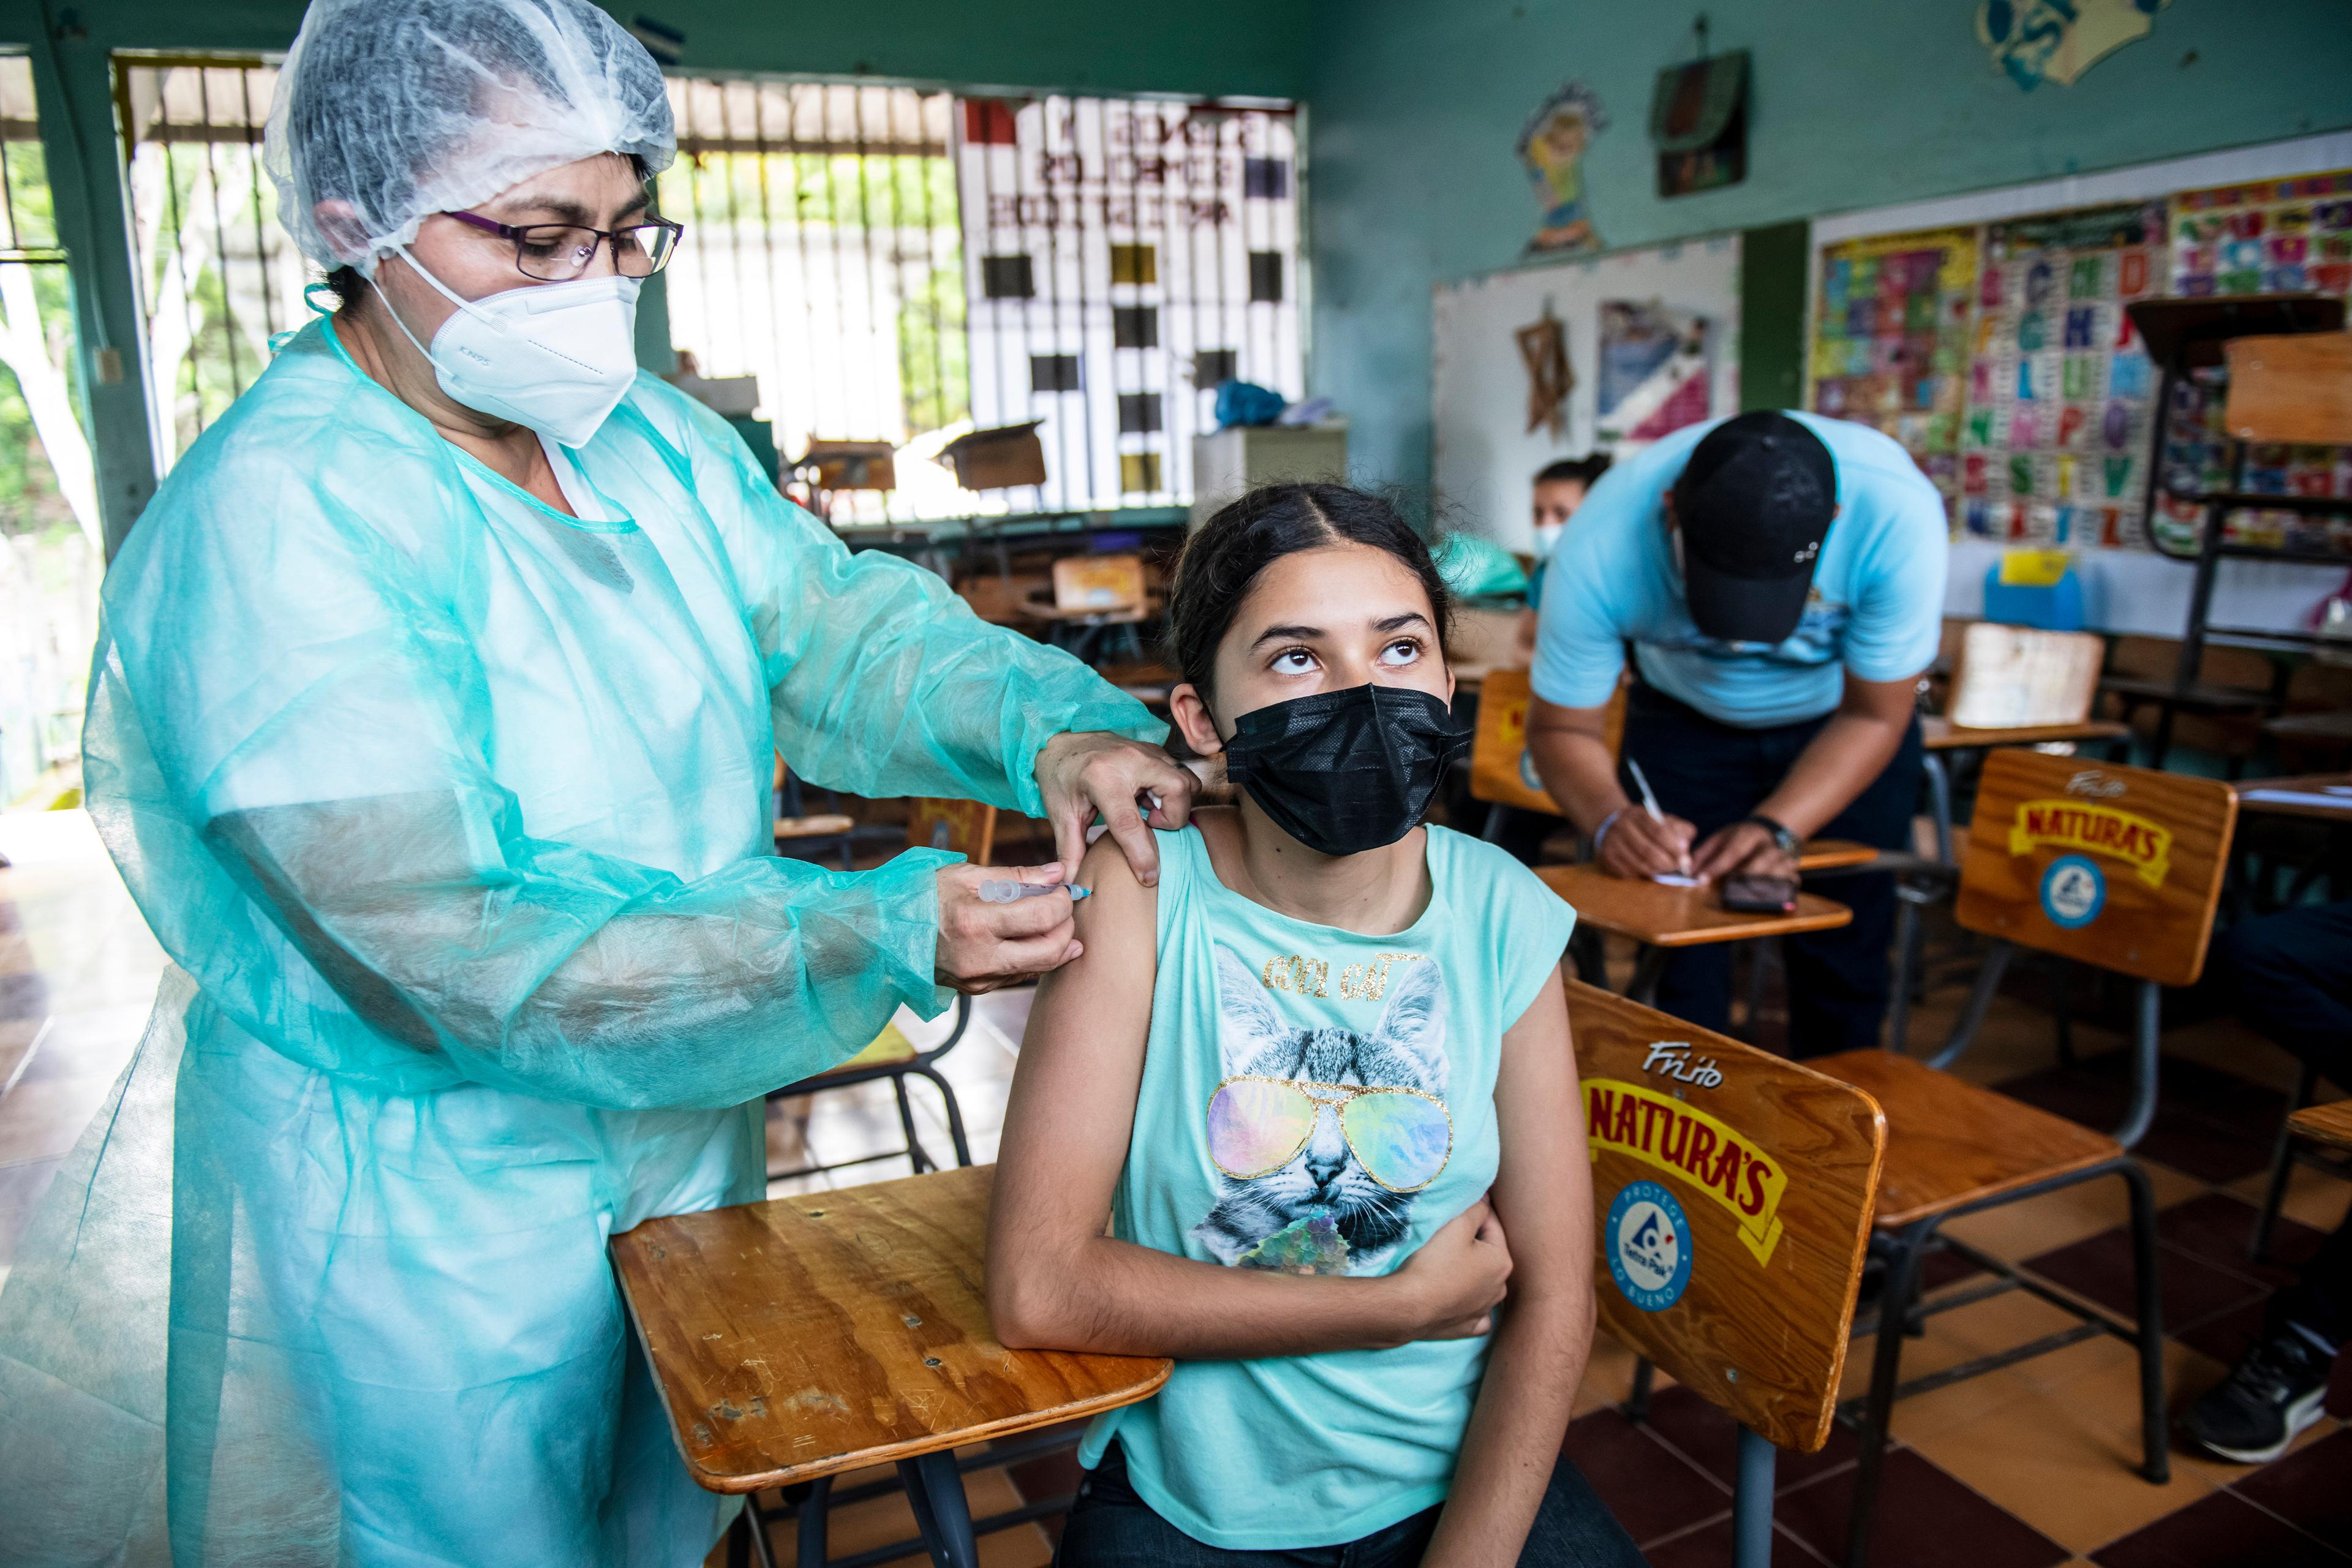 Une femme en tenue de protection vaccine une adolescente. Ils se trouvent dans une école.